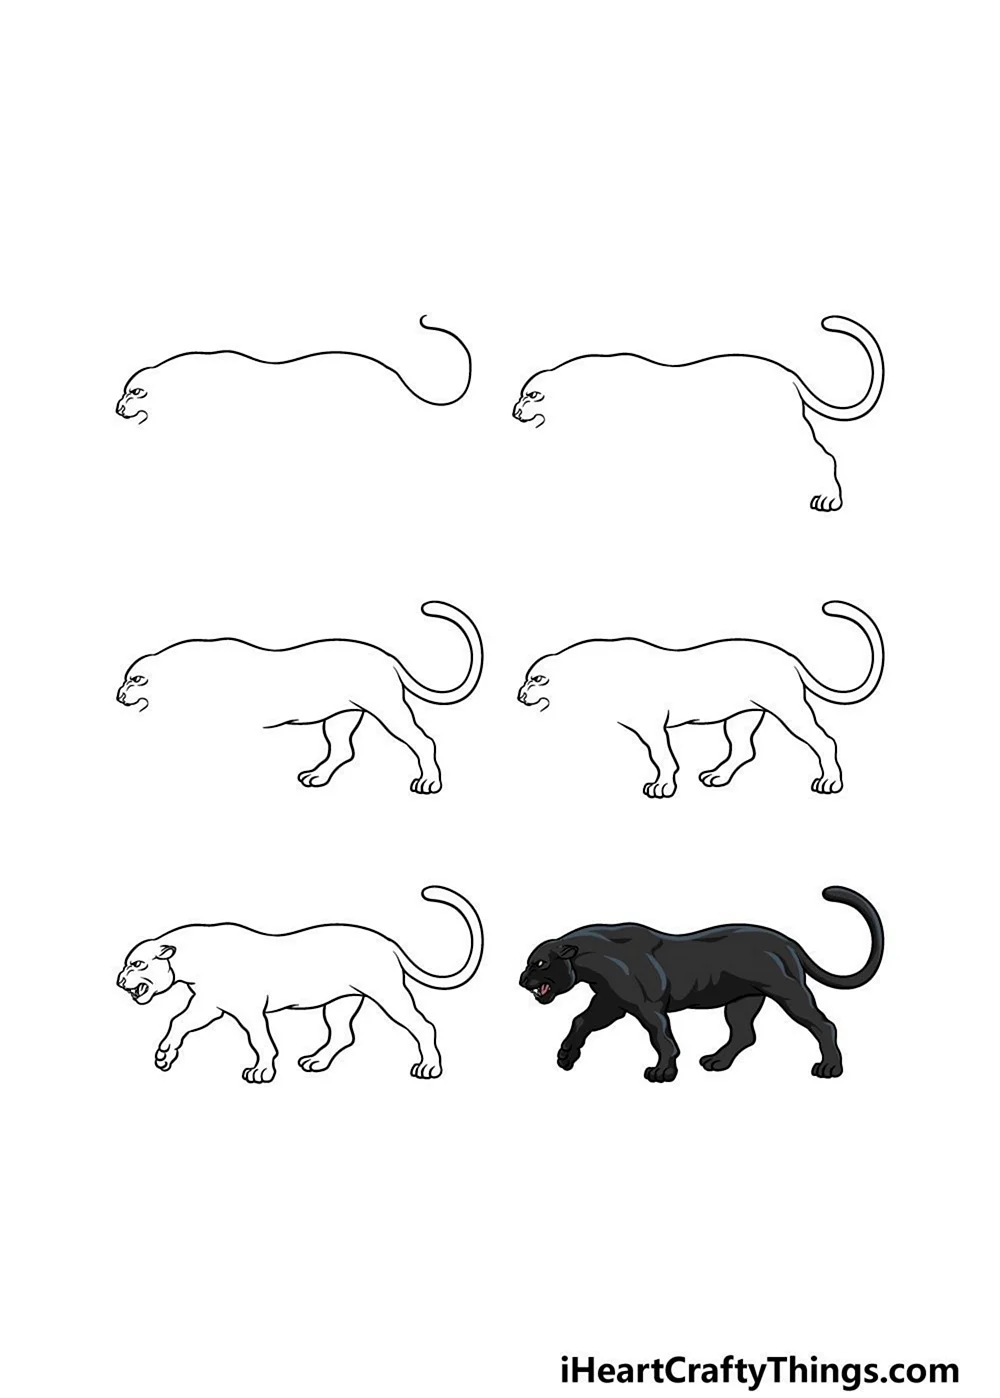 Поэтапное рисование пантеры. Для срисовки